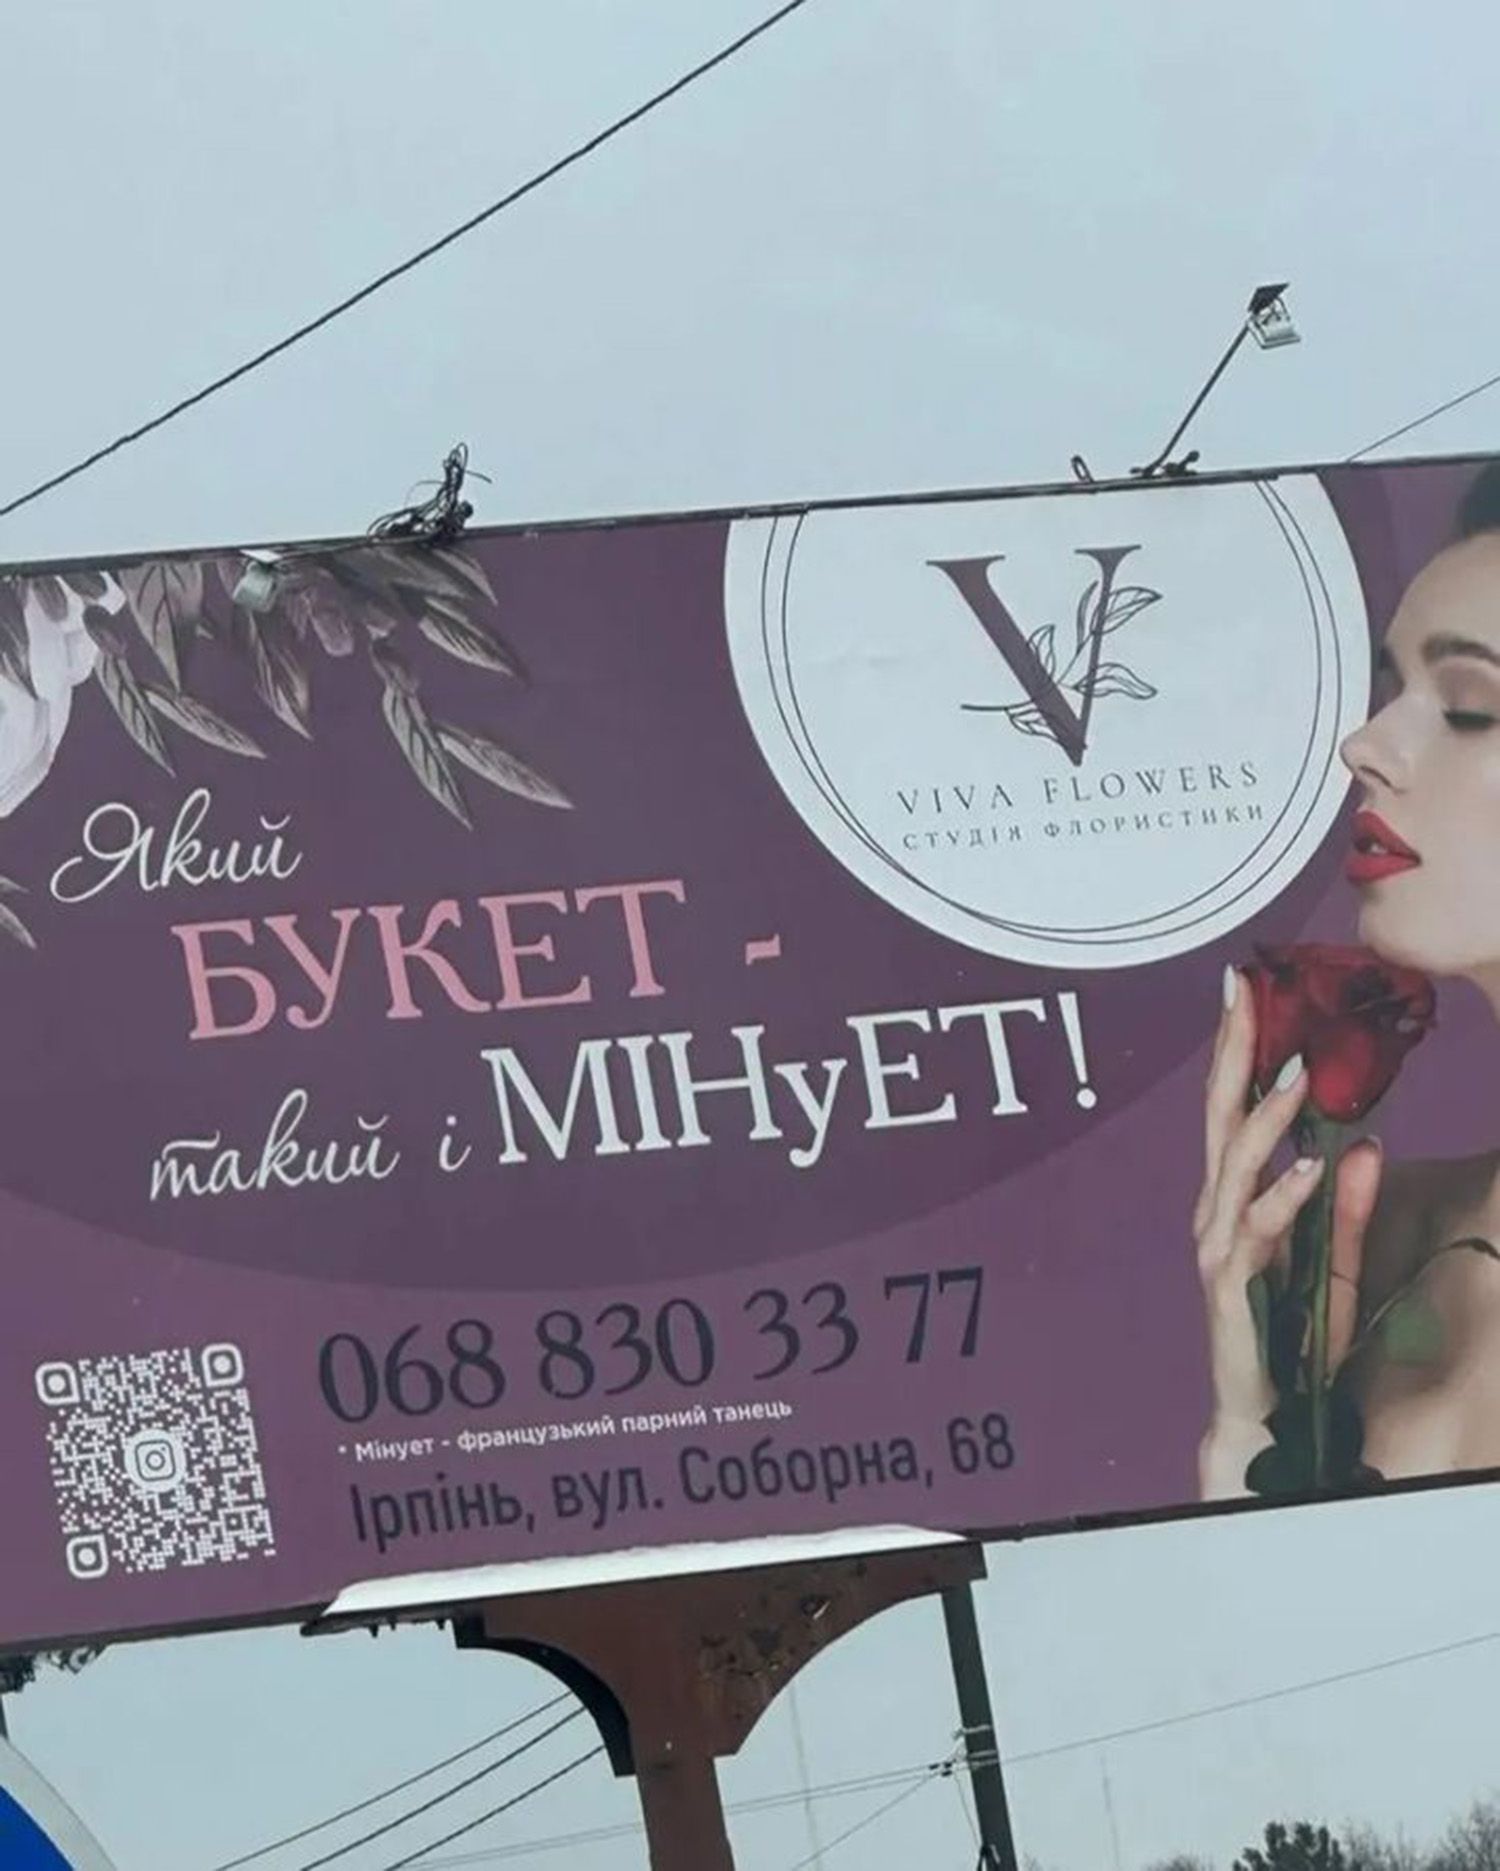 "Який букет – такий і МІЕуЕТ": на Київщині виник скандал через сексистську рекламу на білборді - 24 Канал